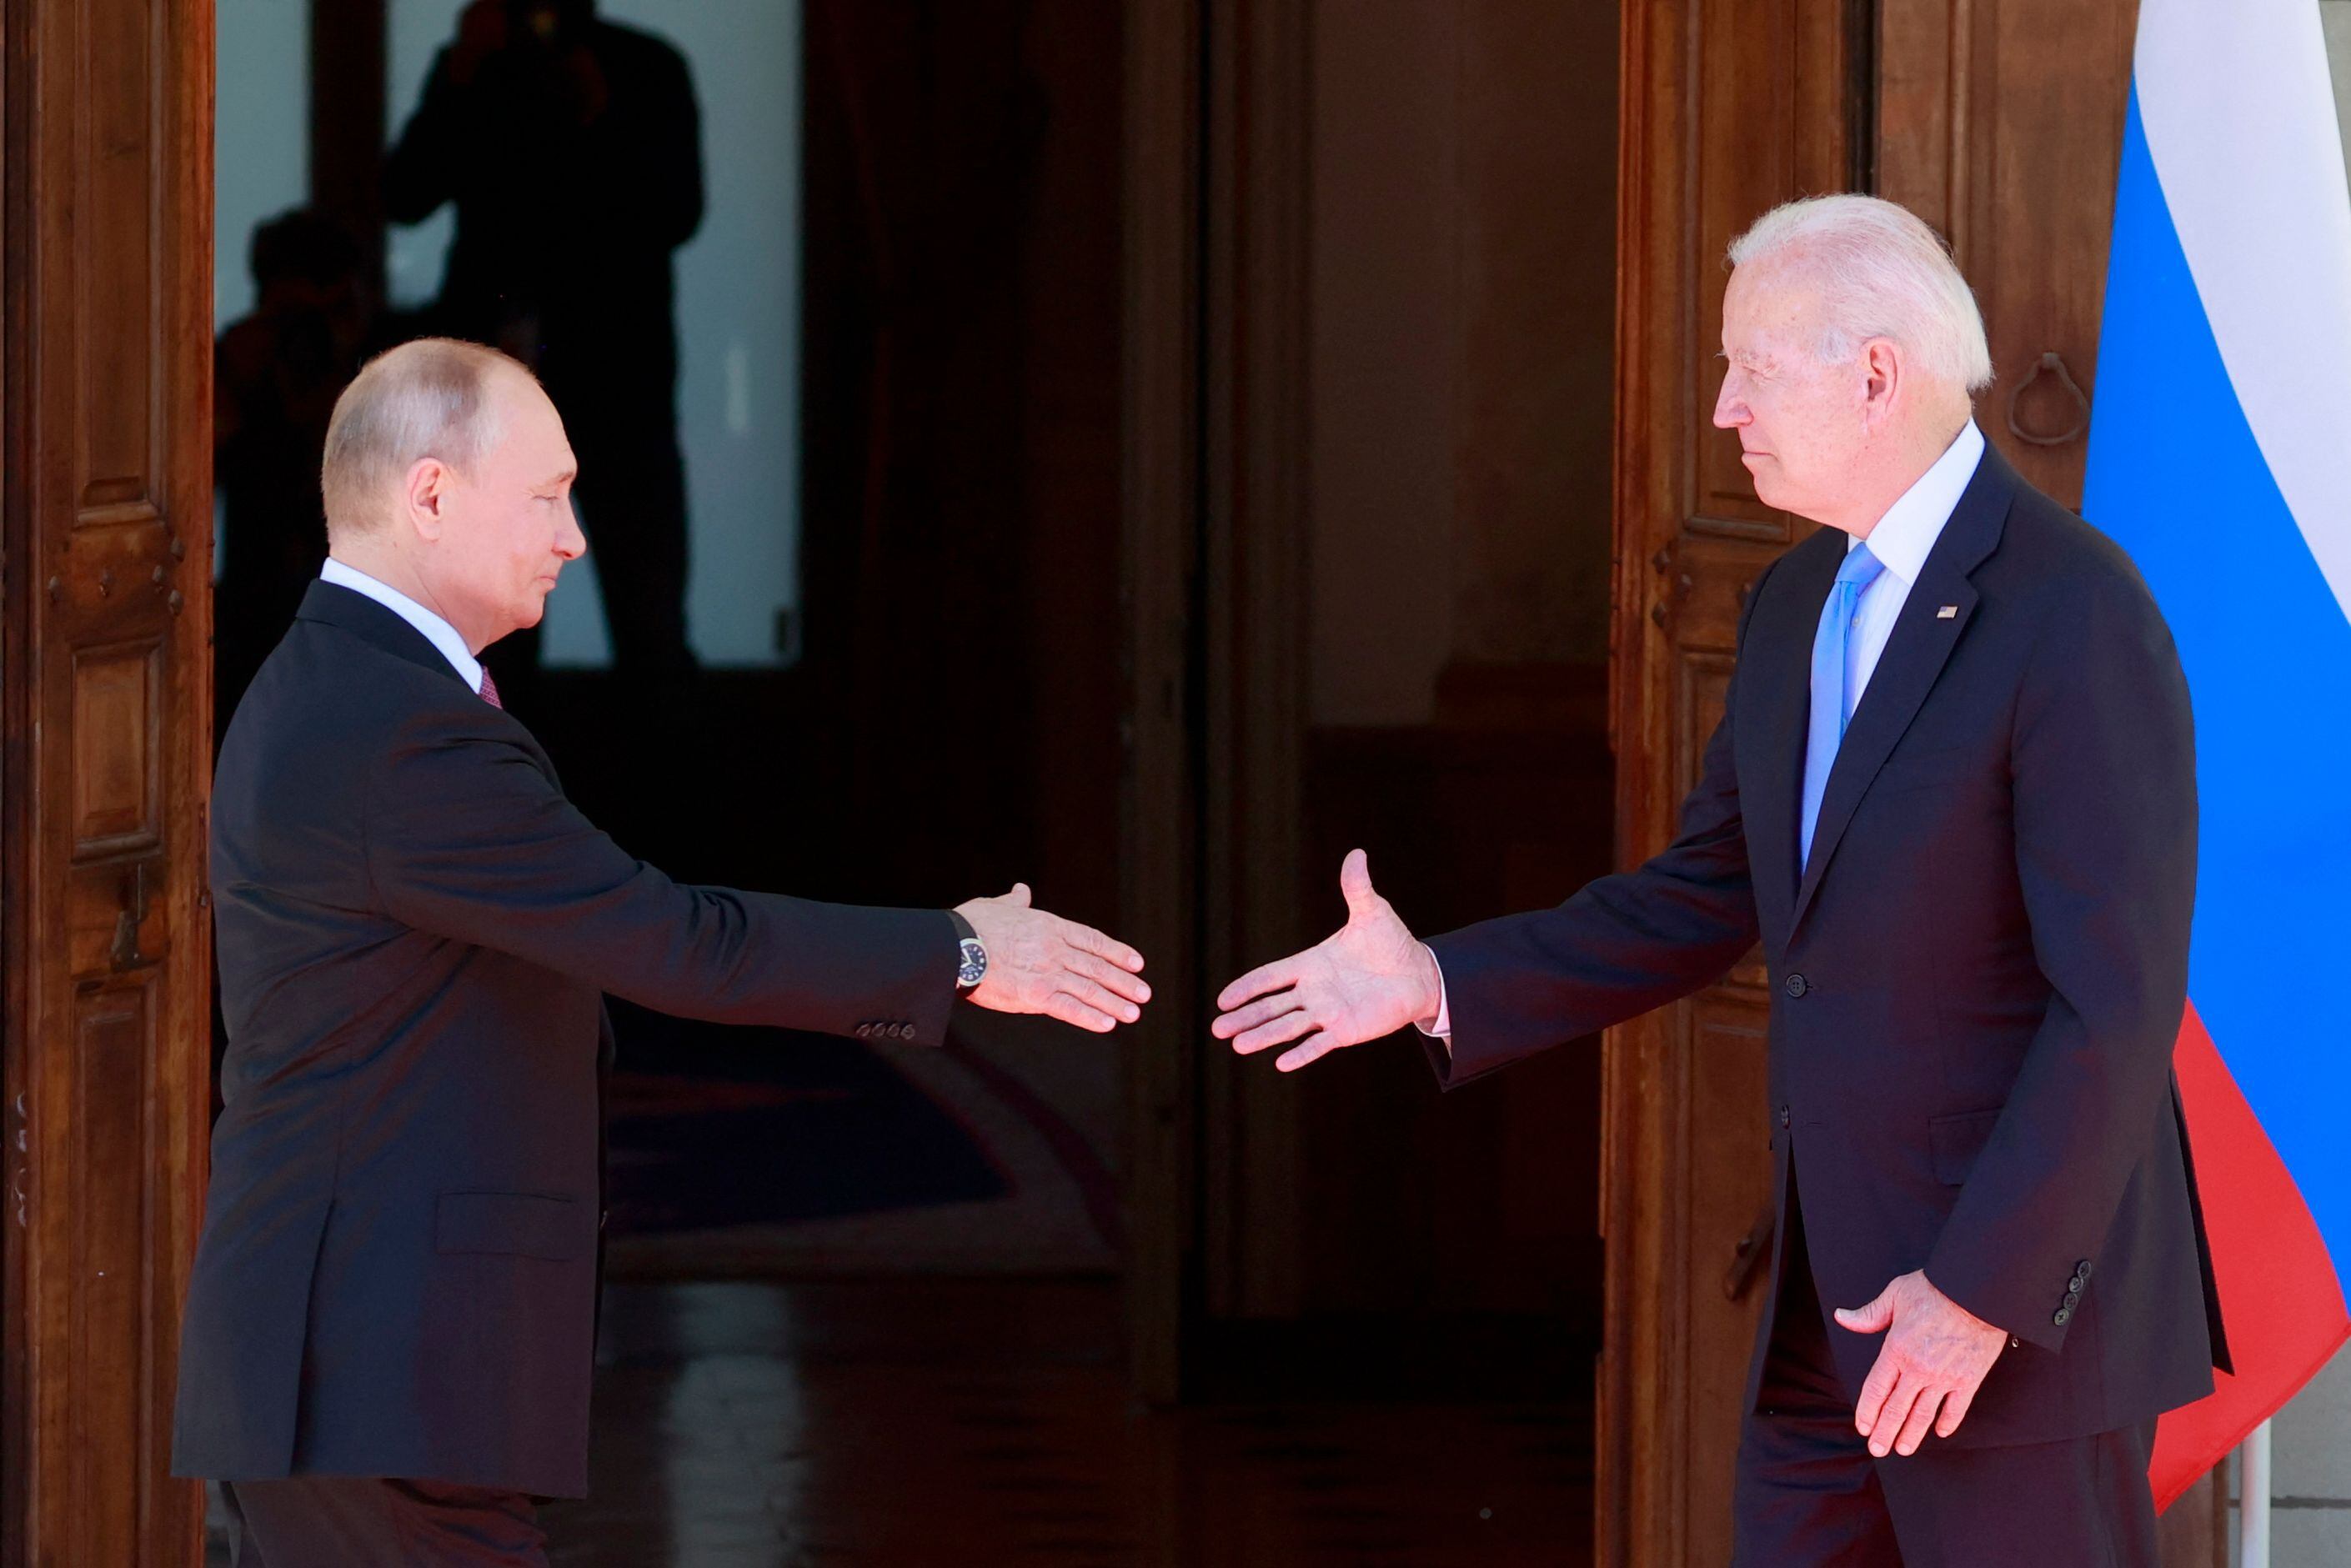 El presidente ruso, Vladimir Putin (izquierda), le da la mano al presidente estadounidense, Joe Biden, antes de su reunión en la 'Villa la Grange' en Ginebra el 16 de junio de 2021. FOTO: